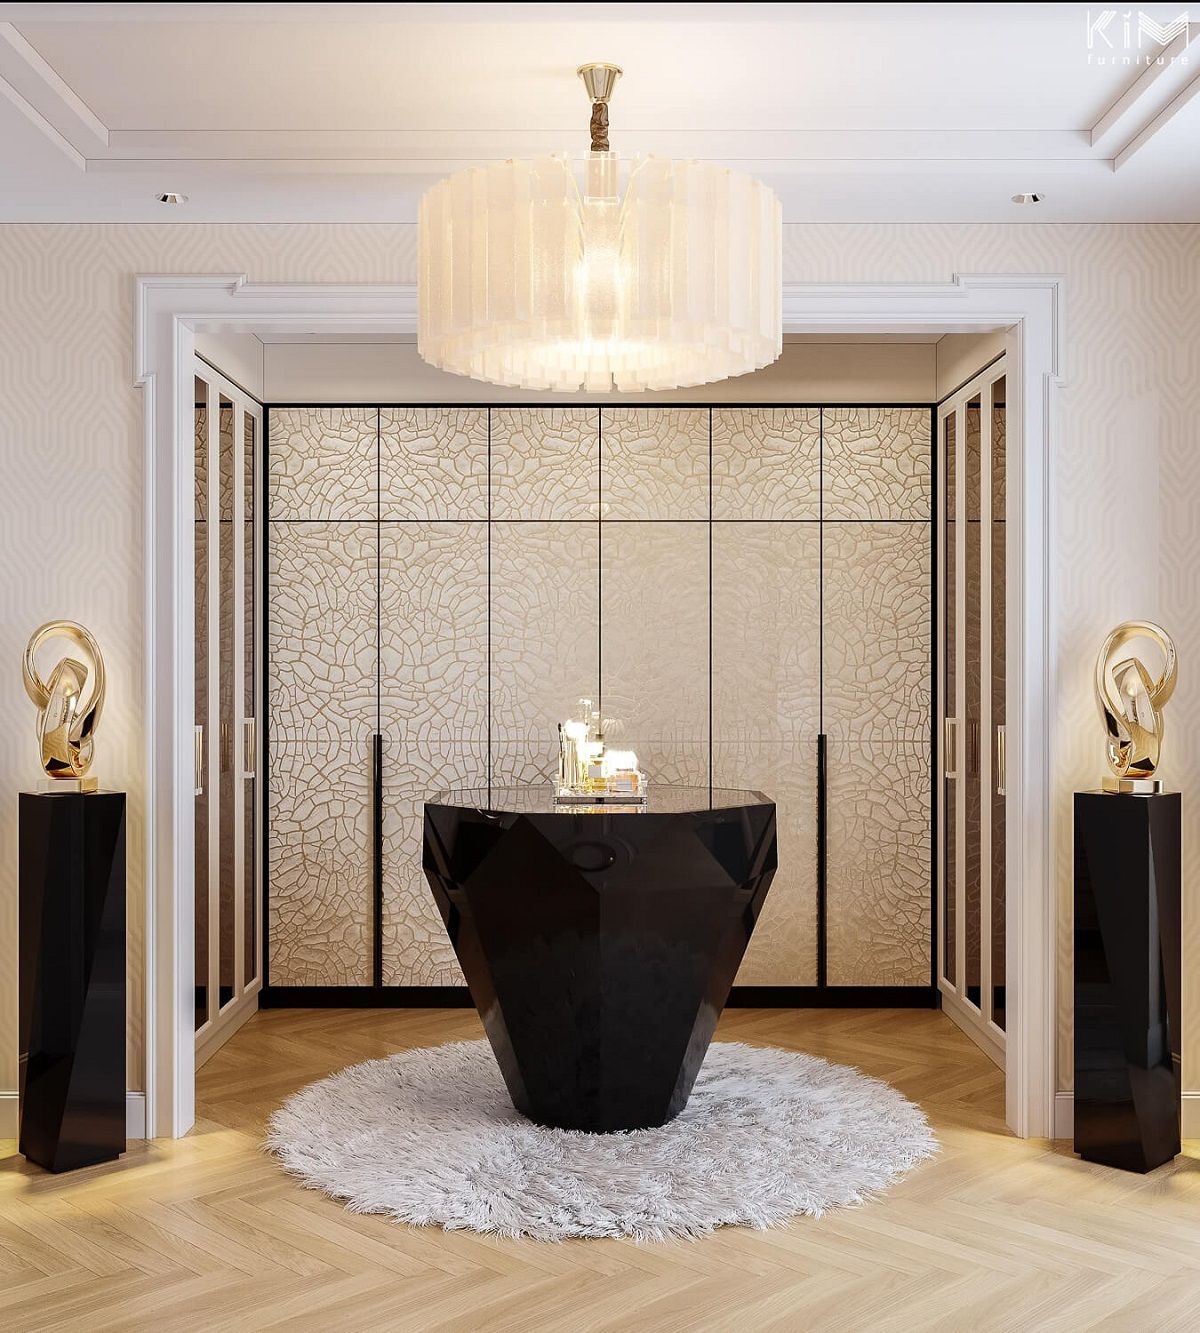 Biệt thự Harmony - Kể câu chuyện Modern Classic theo cách mộng mơ | KIM luxury interior design